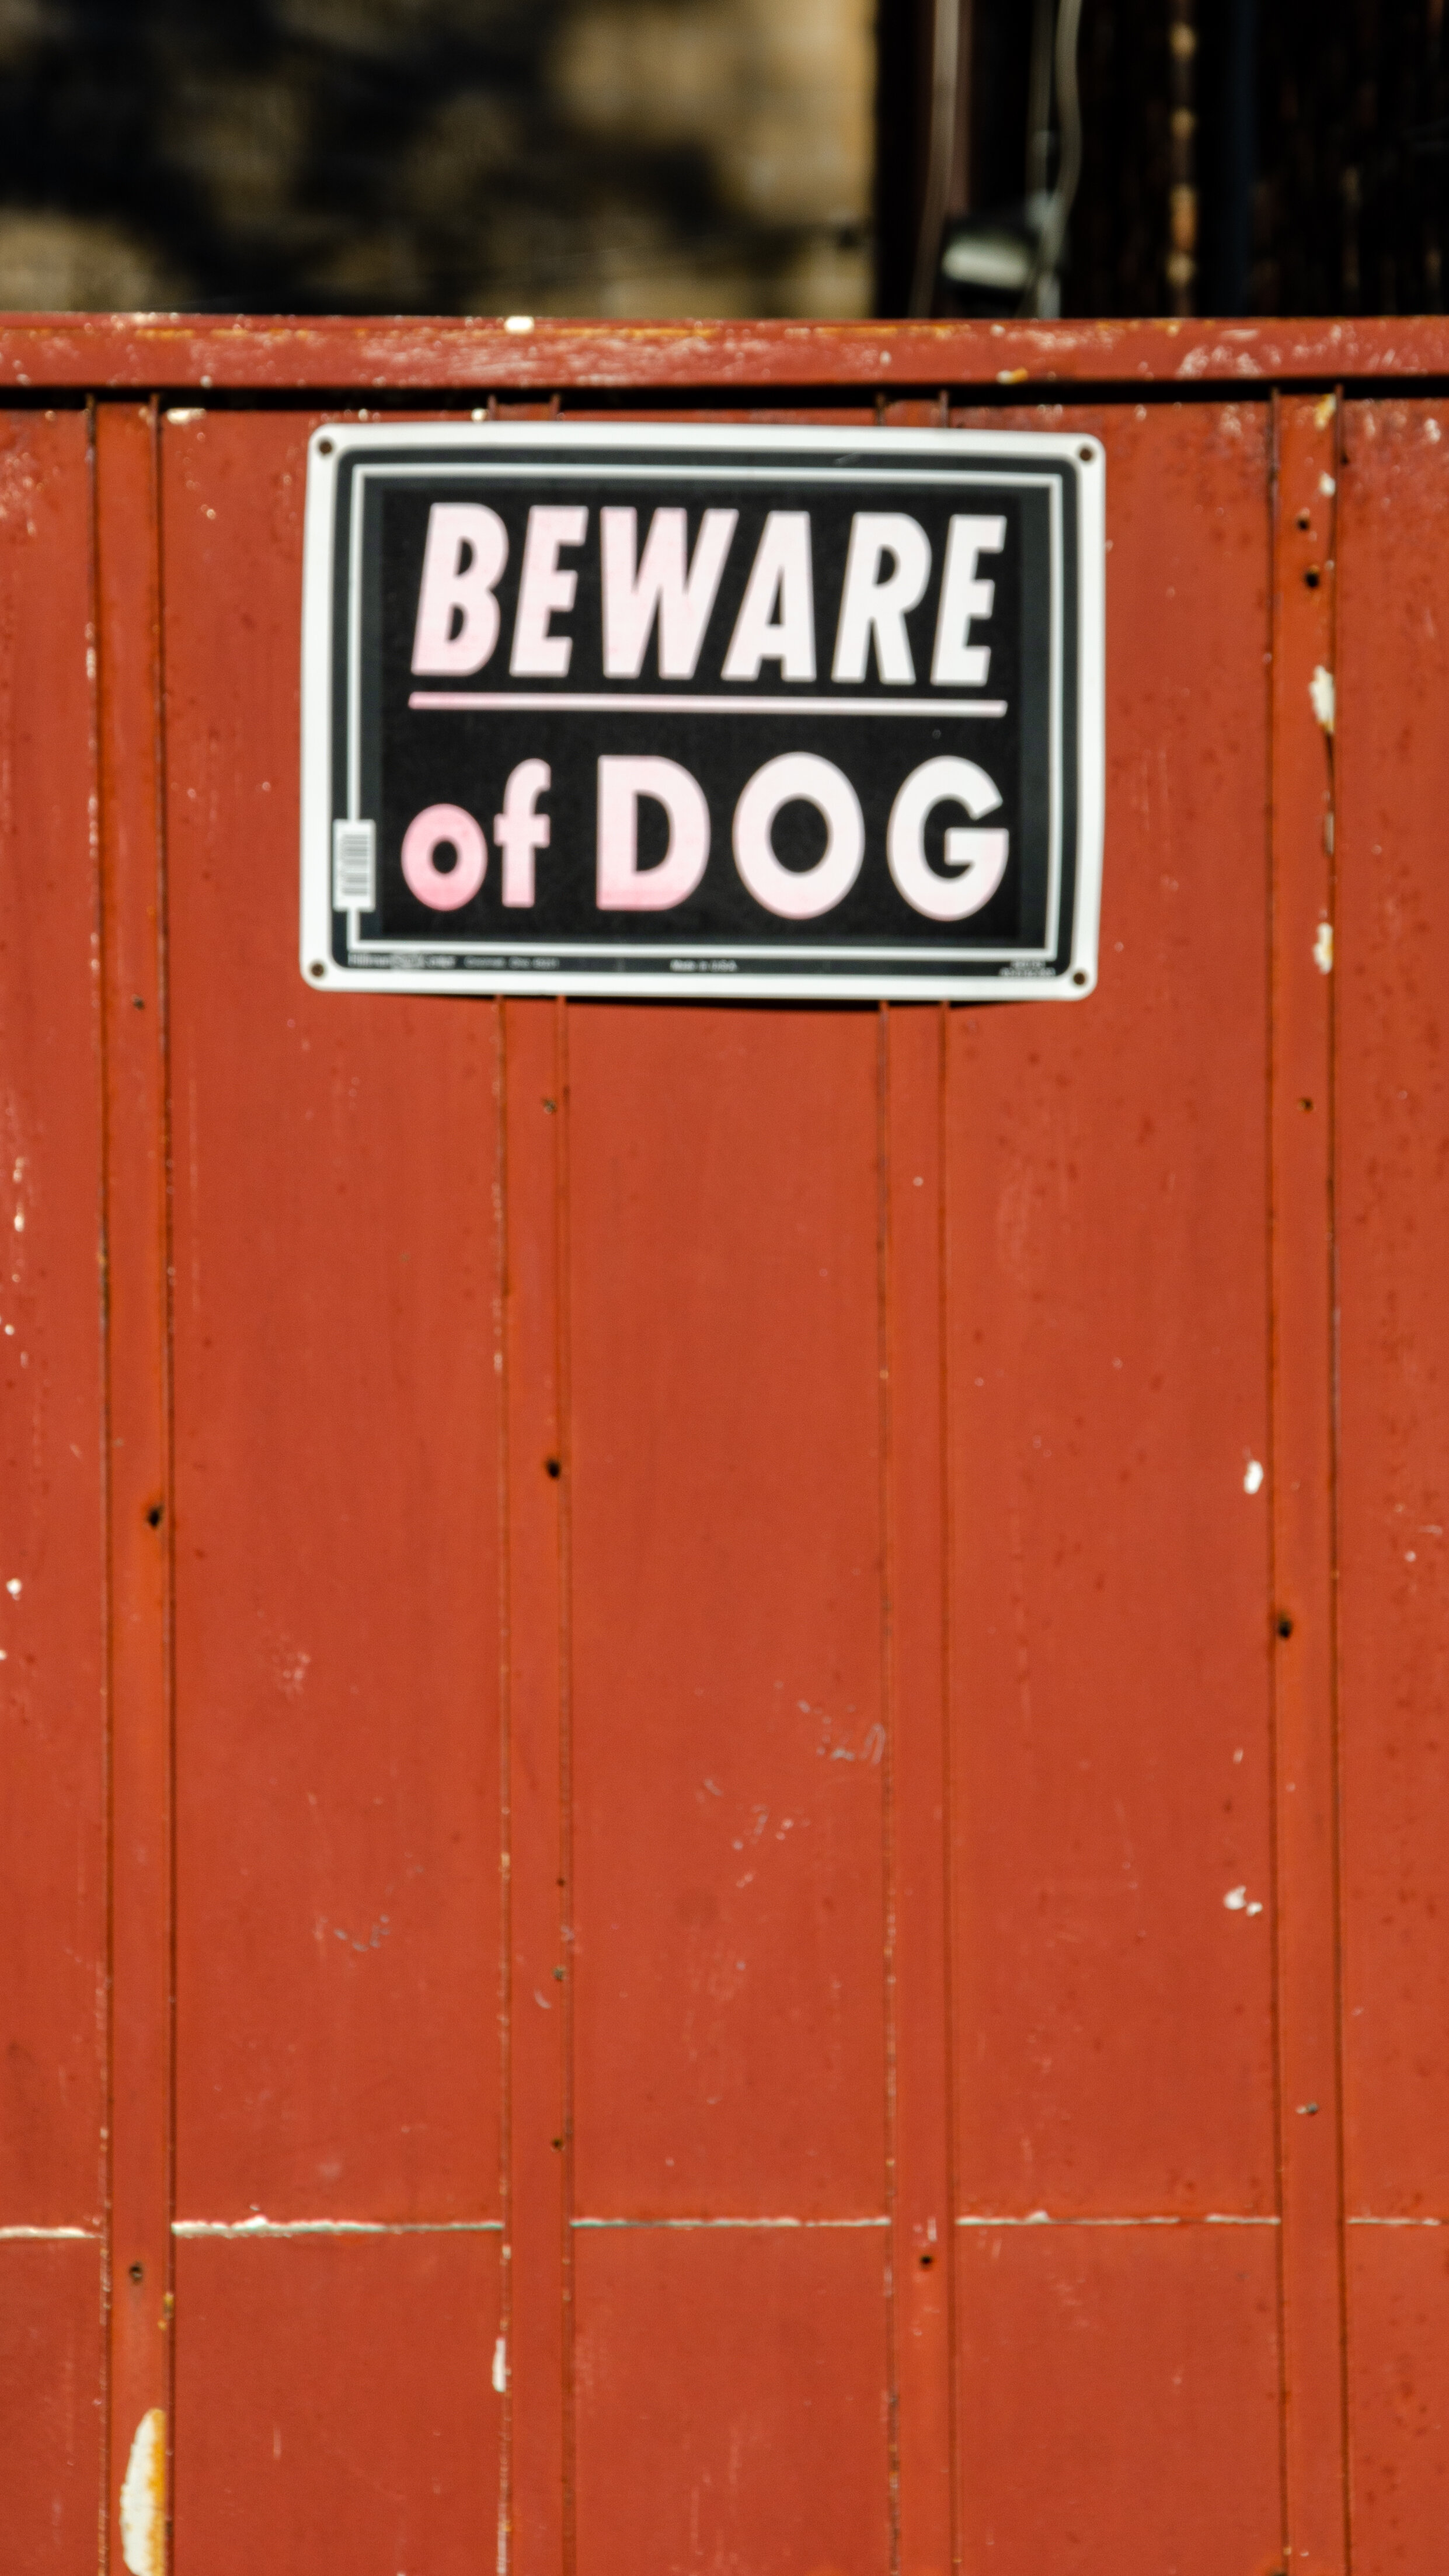 beware of dog 16x9.jpg